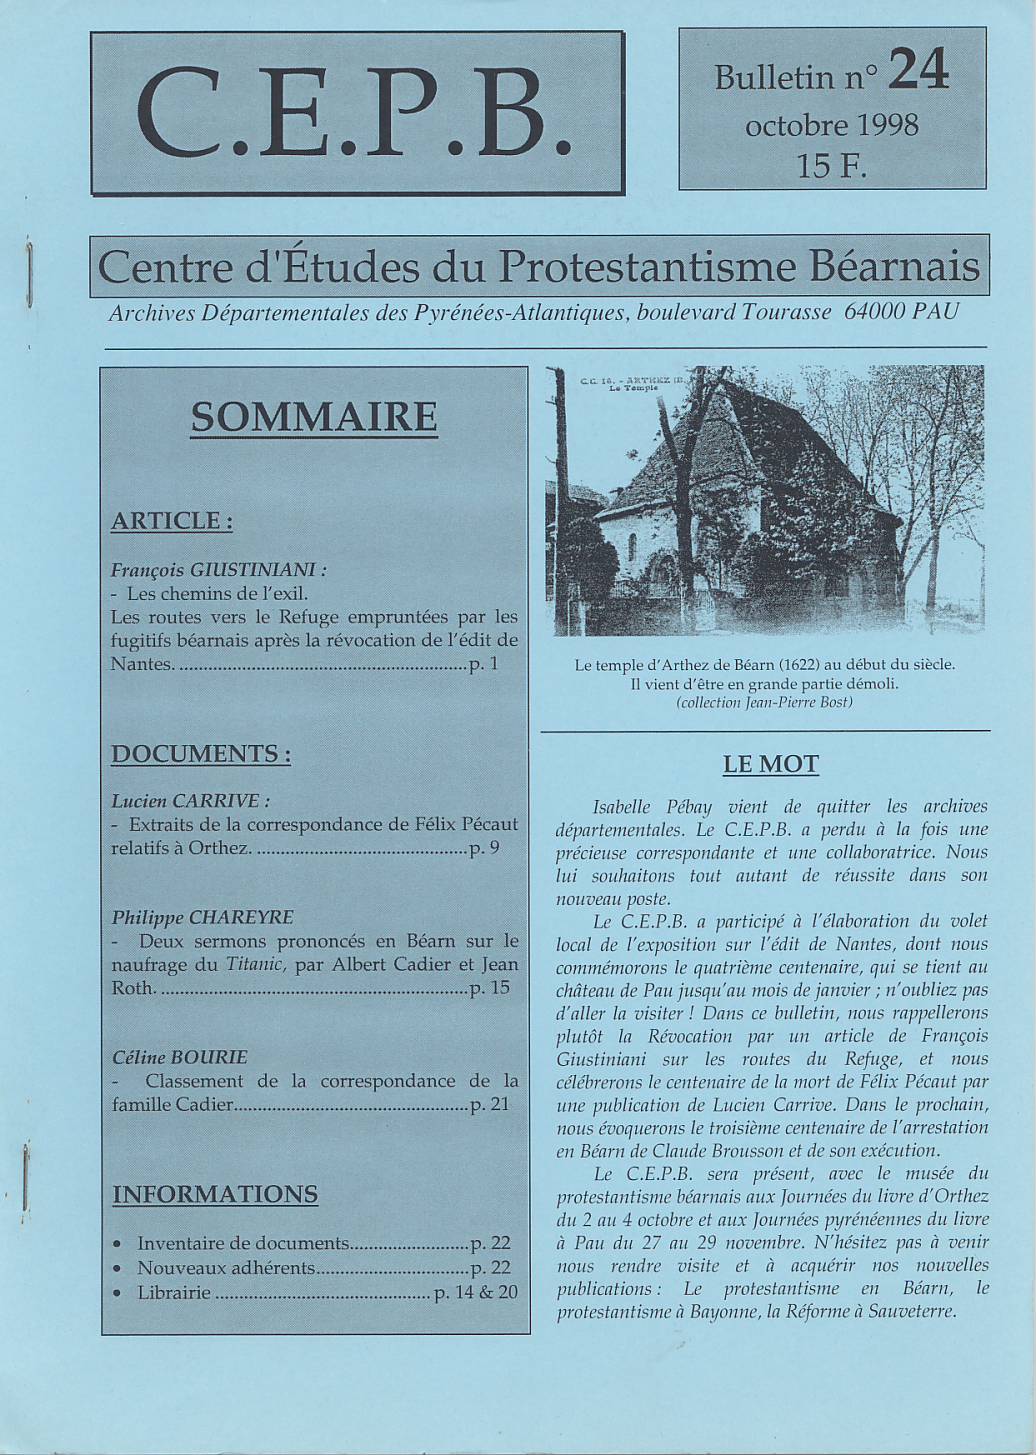 CEPB protestantisme Béarn bulletin 24